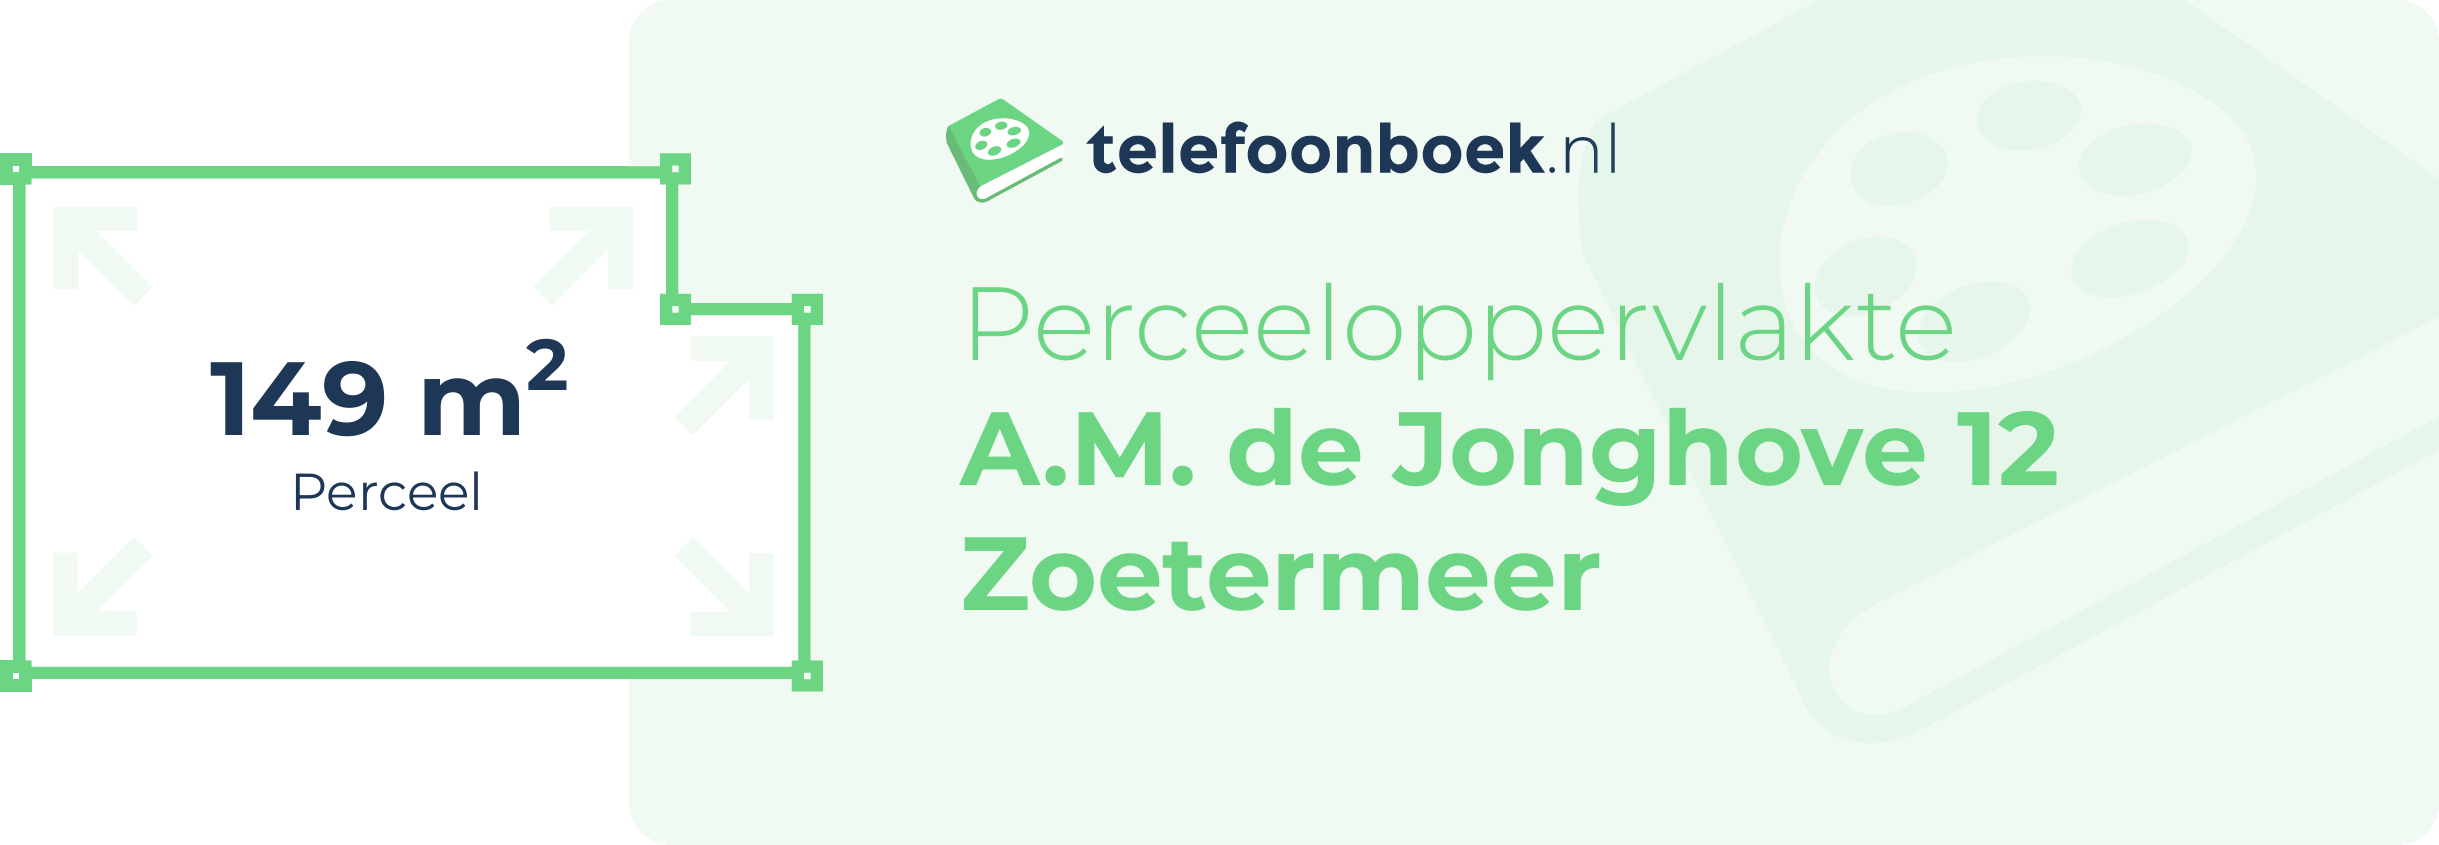 Perceeloppervlakte A.M. De Jonghove 12 Zoetermeer